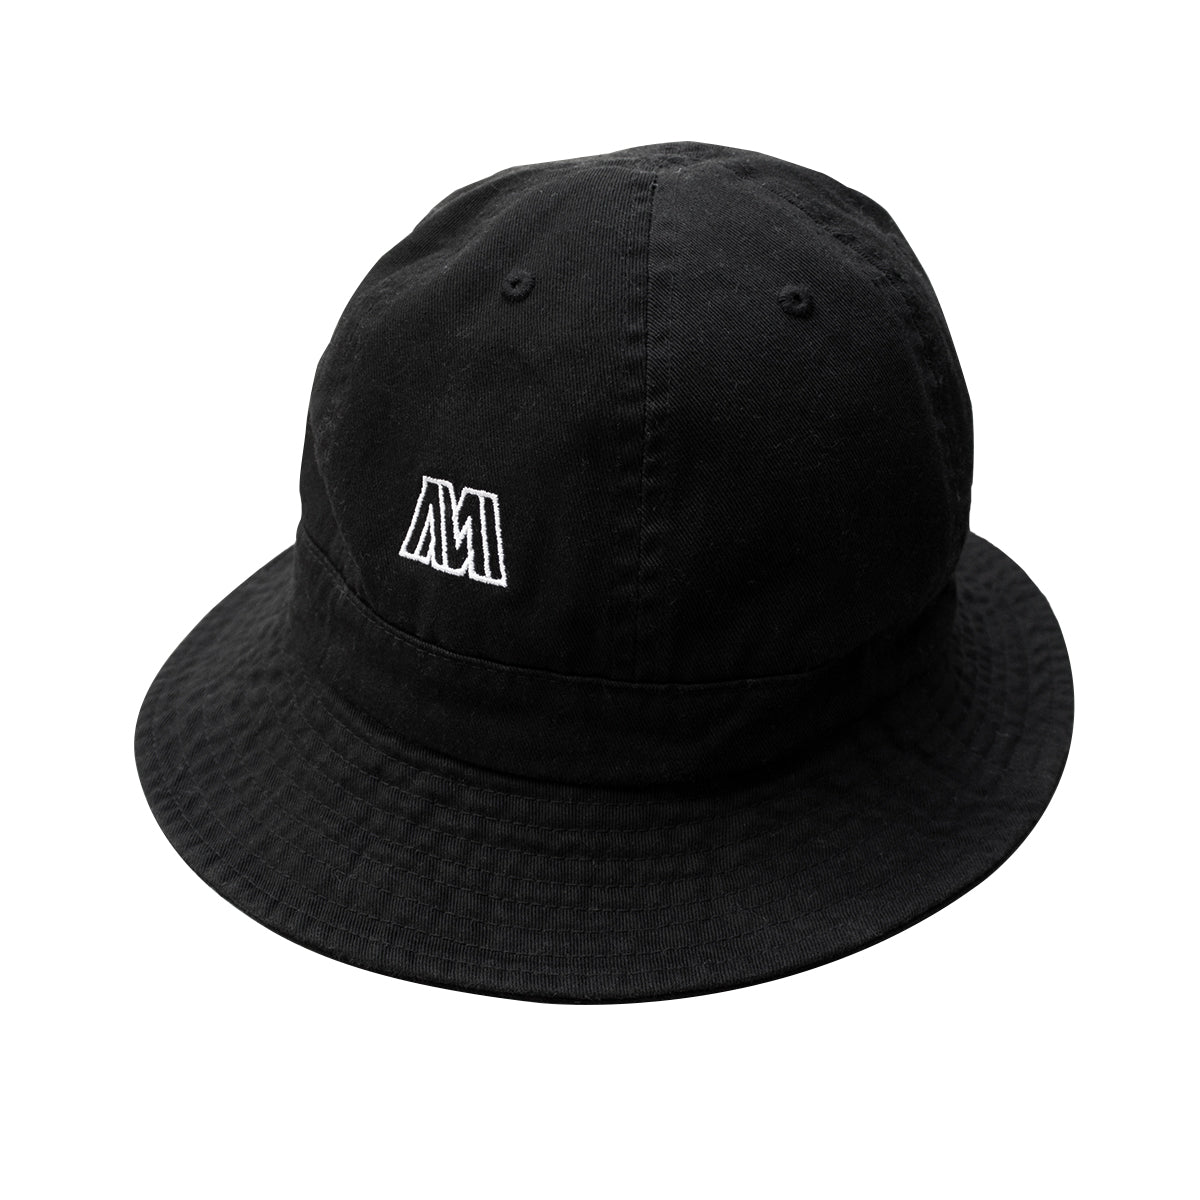 Warped Bucket Hat - Black